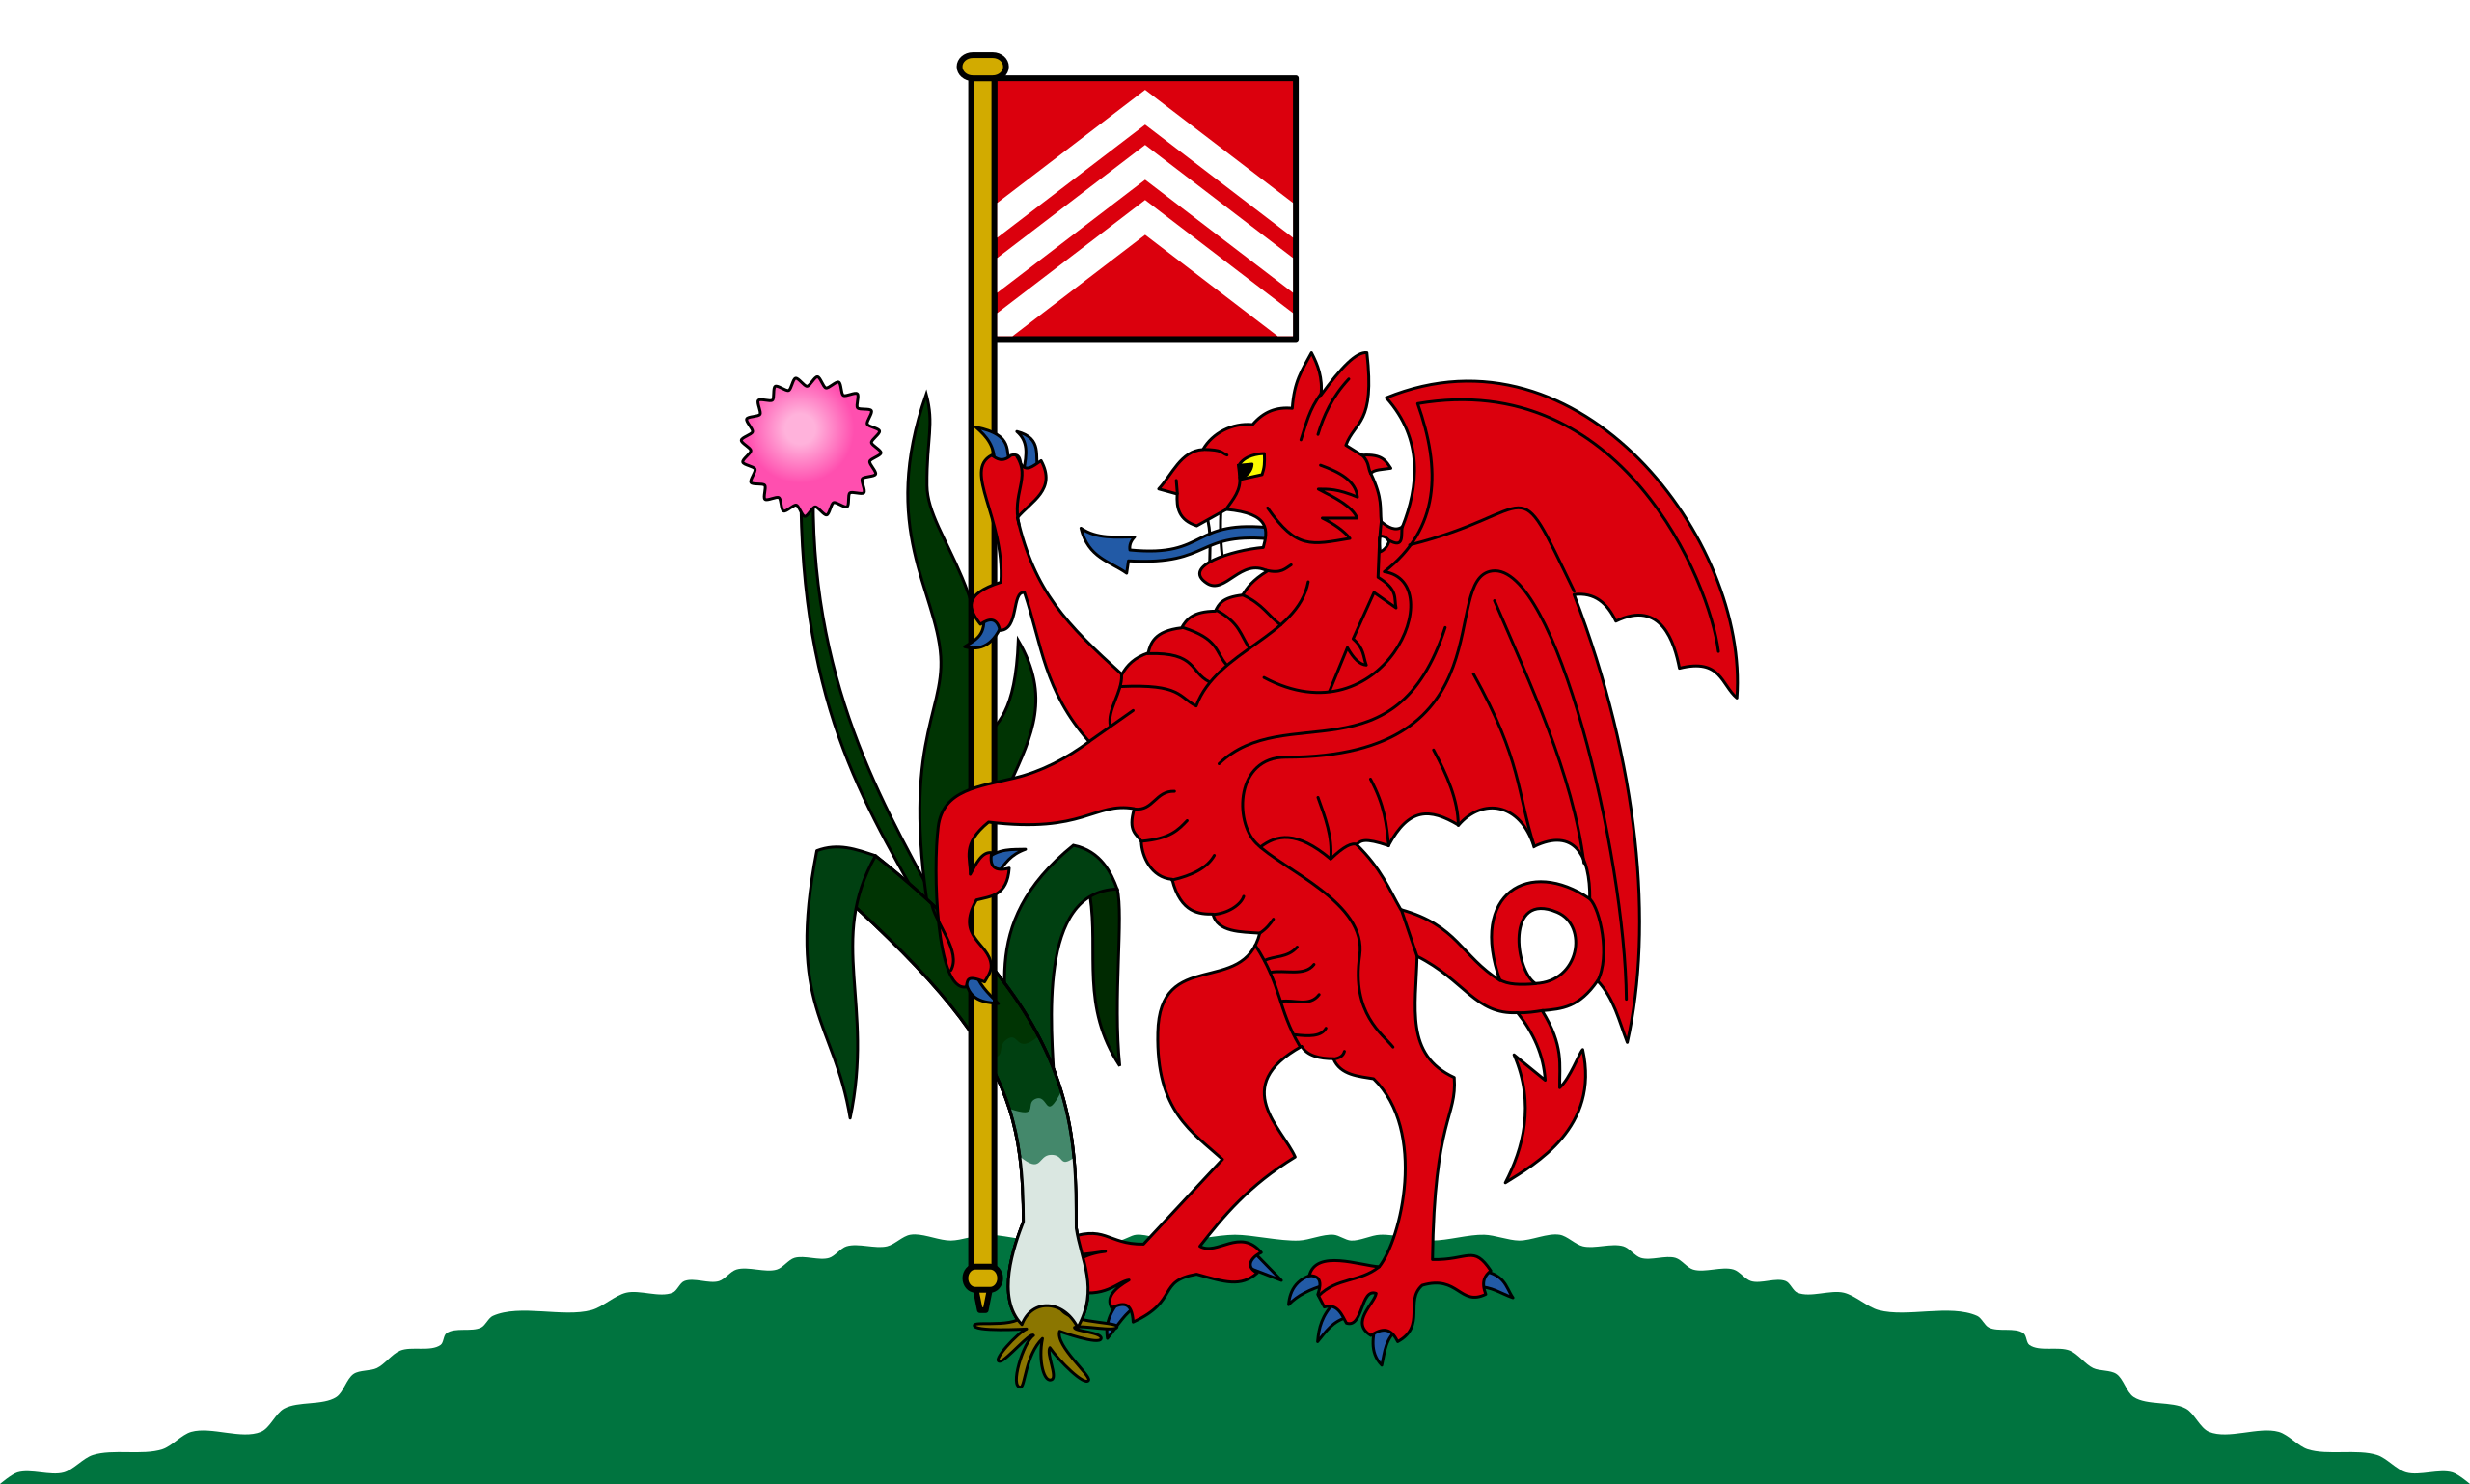 Wales Cardiff флаг